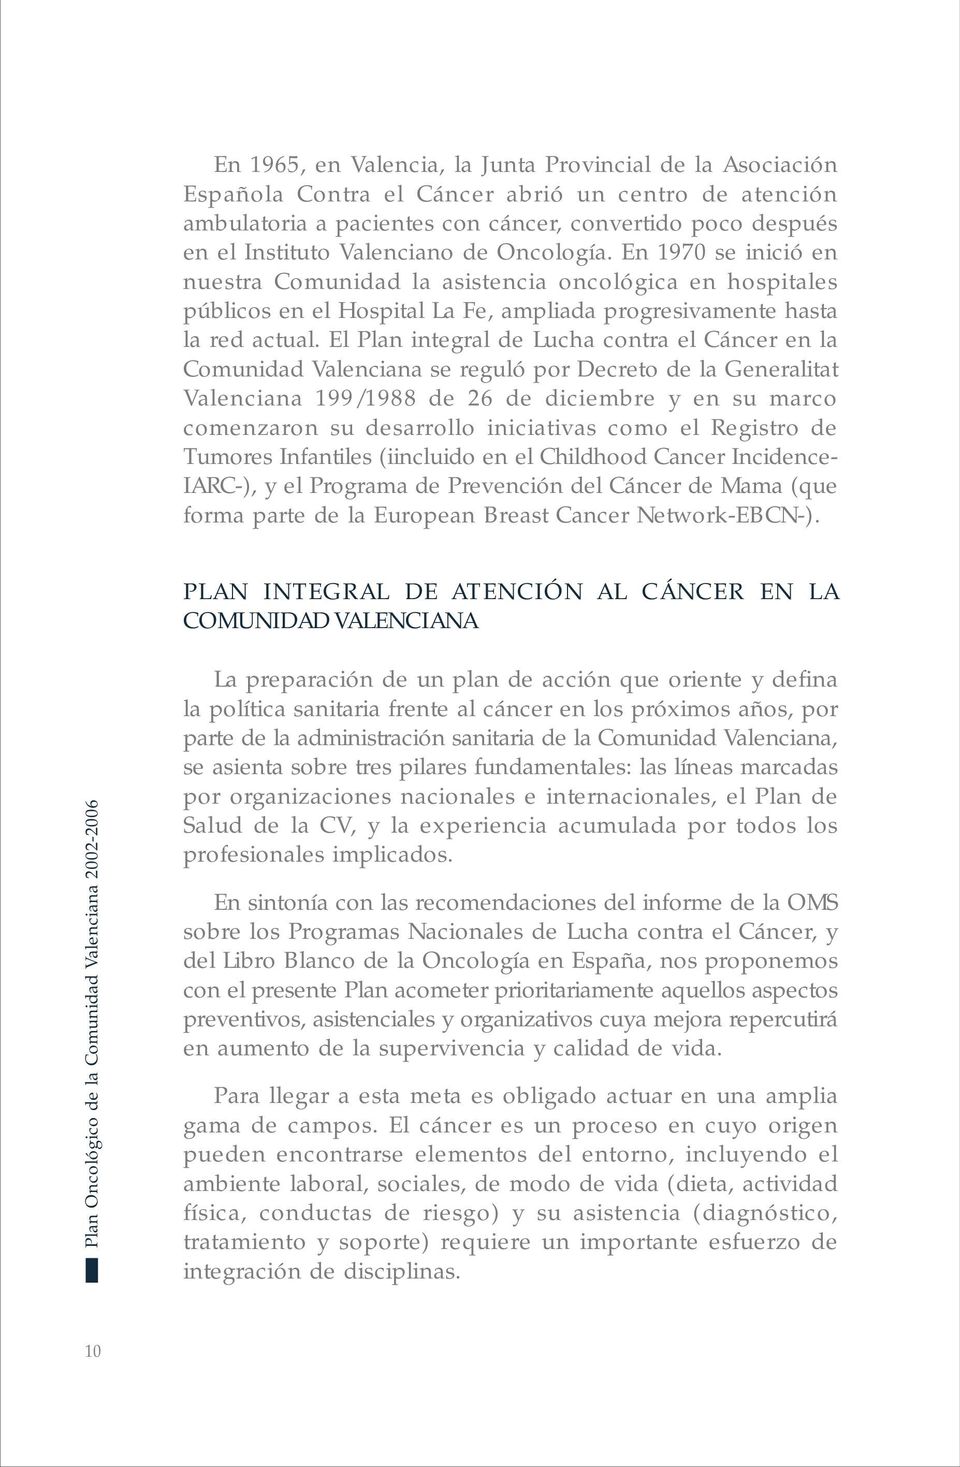 El Plan integral de Lucha contra el Cáncer en la Comunidad Valenciana se reguló por Decreto de la Generalitat Valenciana 199/1988 de 26 de diciembre y en su marco comenzaron su desarrollo iniciativas